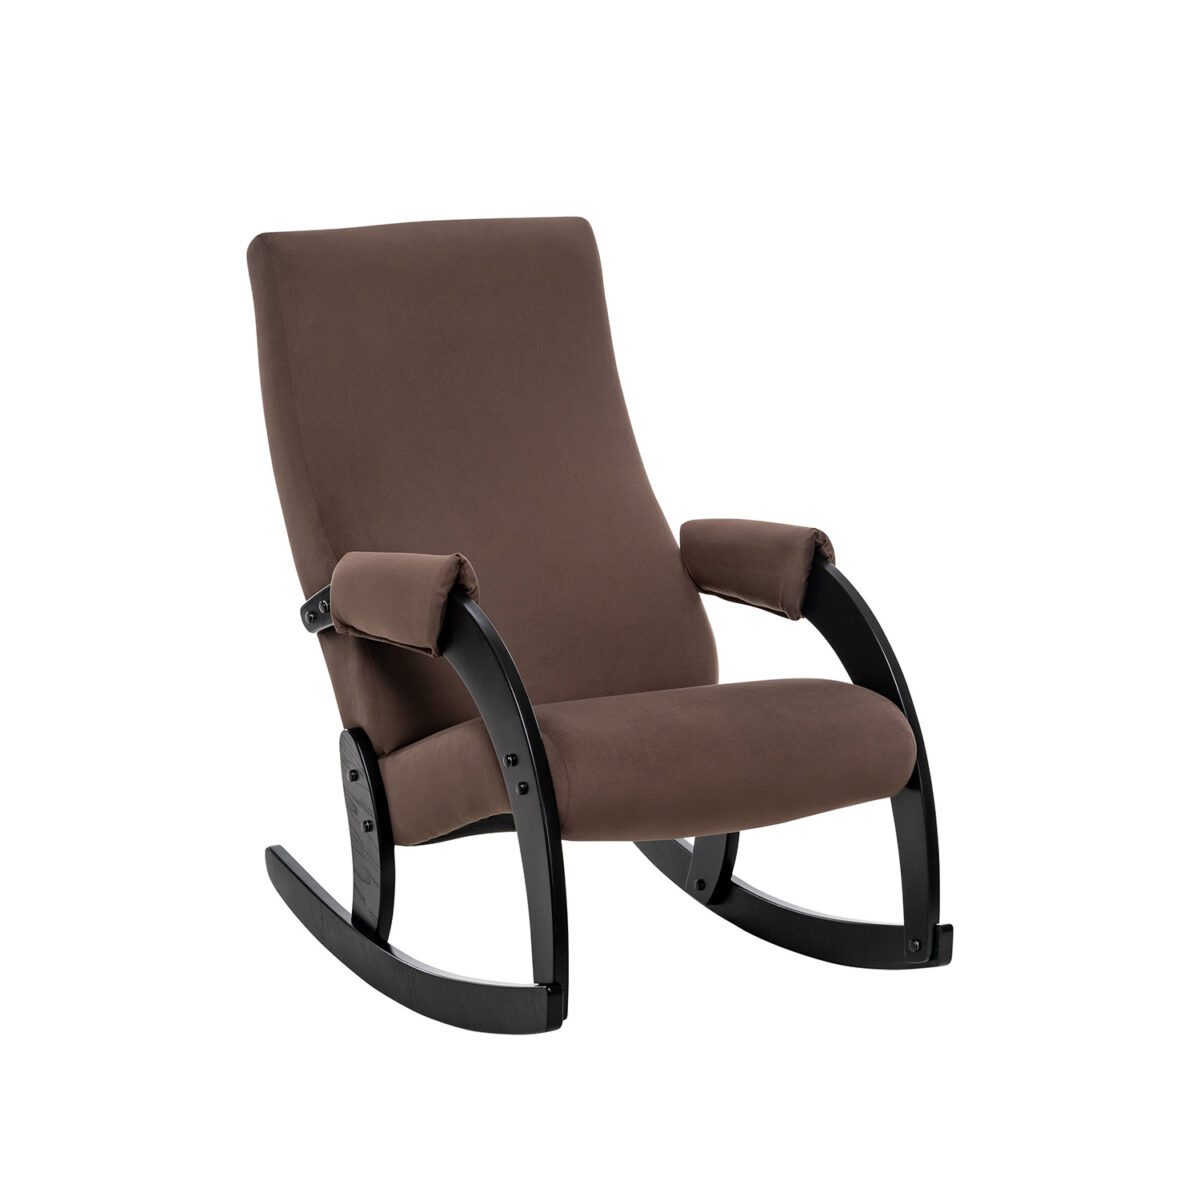 Кресло-качалка Модель 67М Венге, ткань V 23